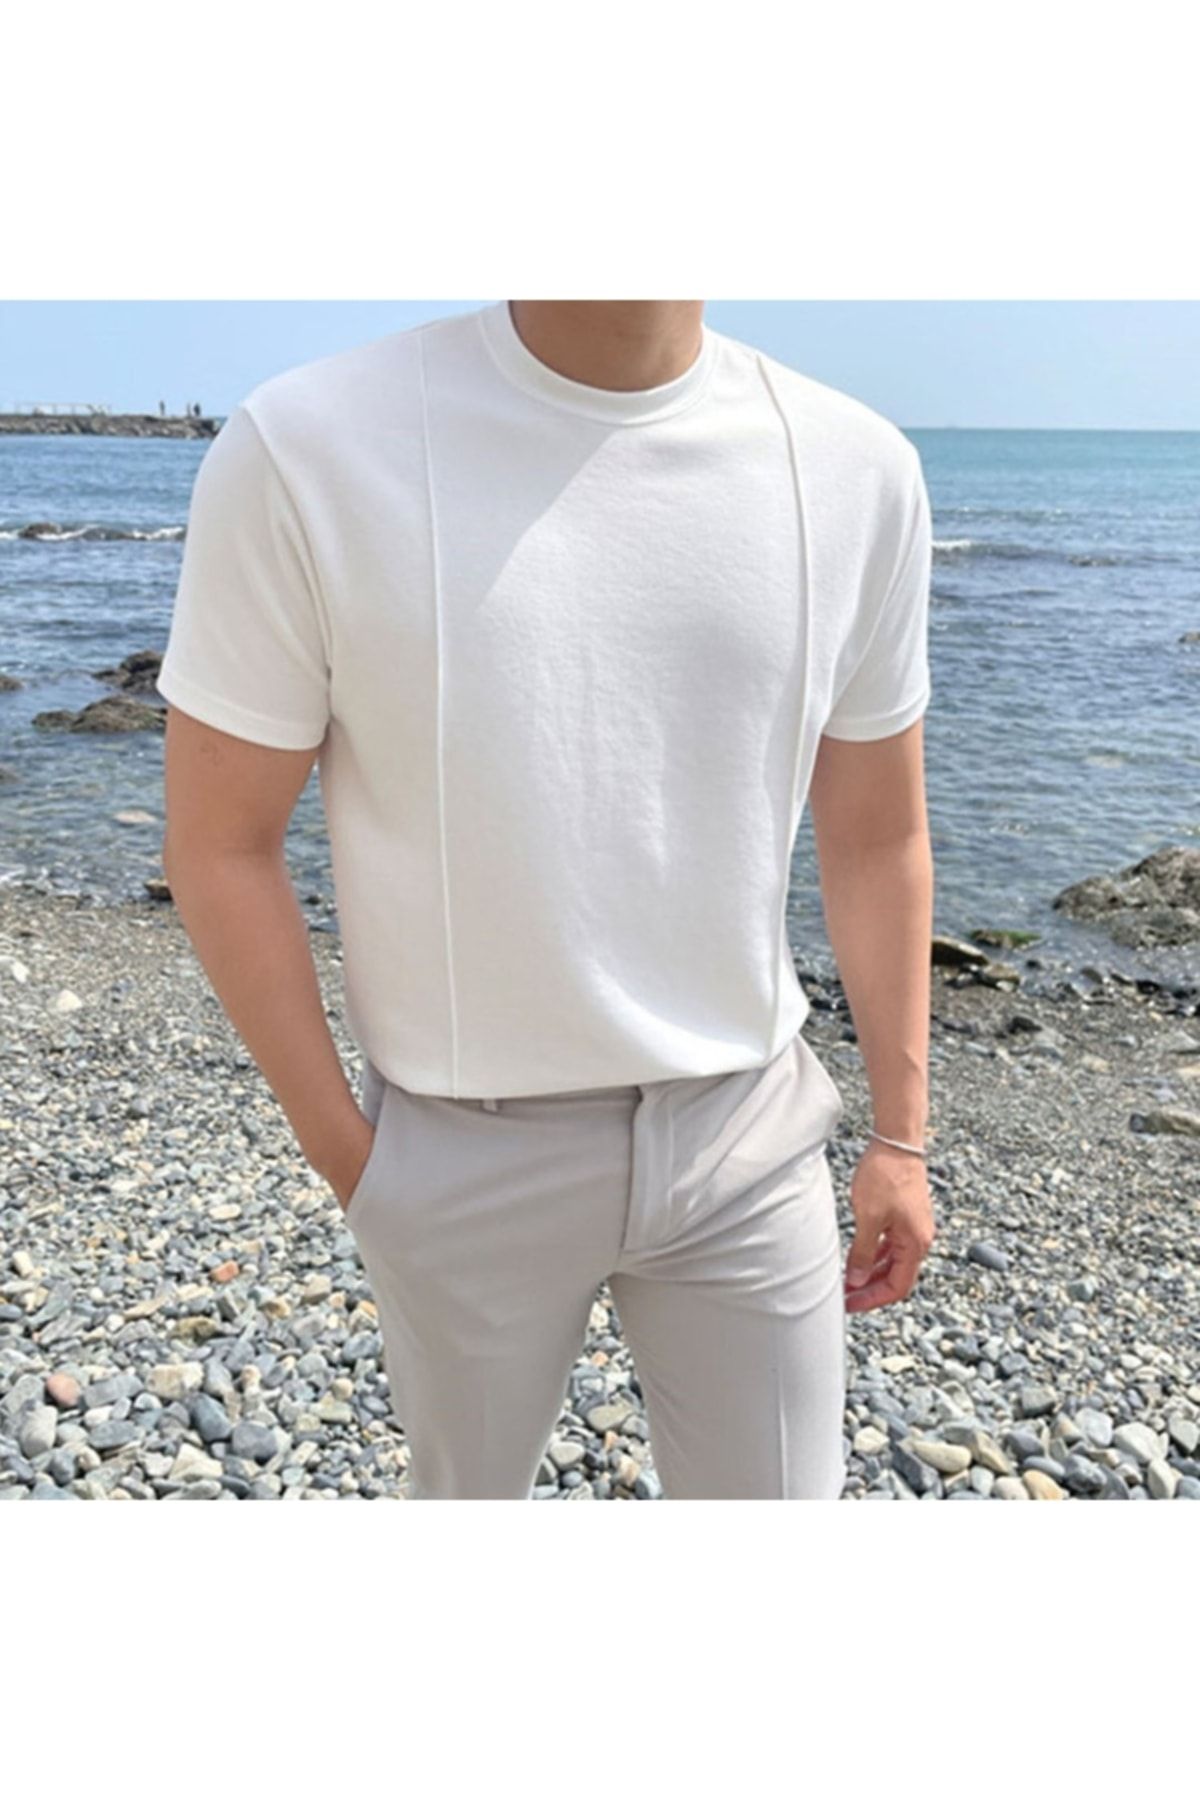 Tarz Cool Beyaz Erkek Yuvarlak Yaka 2 Çizgili Örme Triko T-shirt